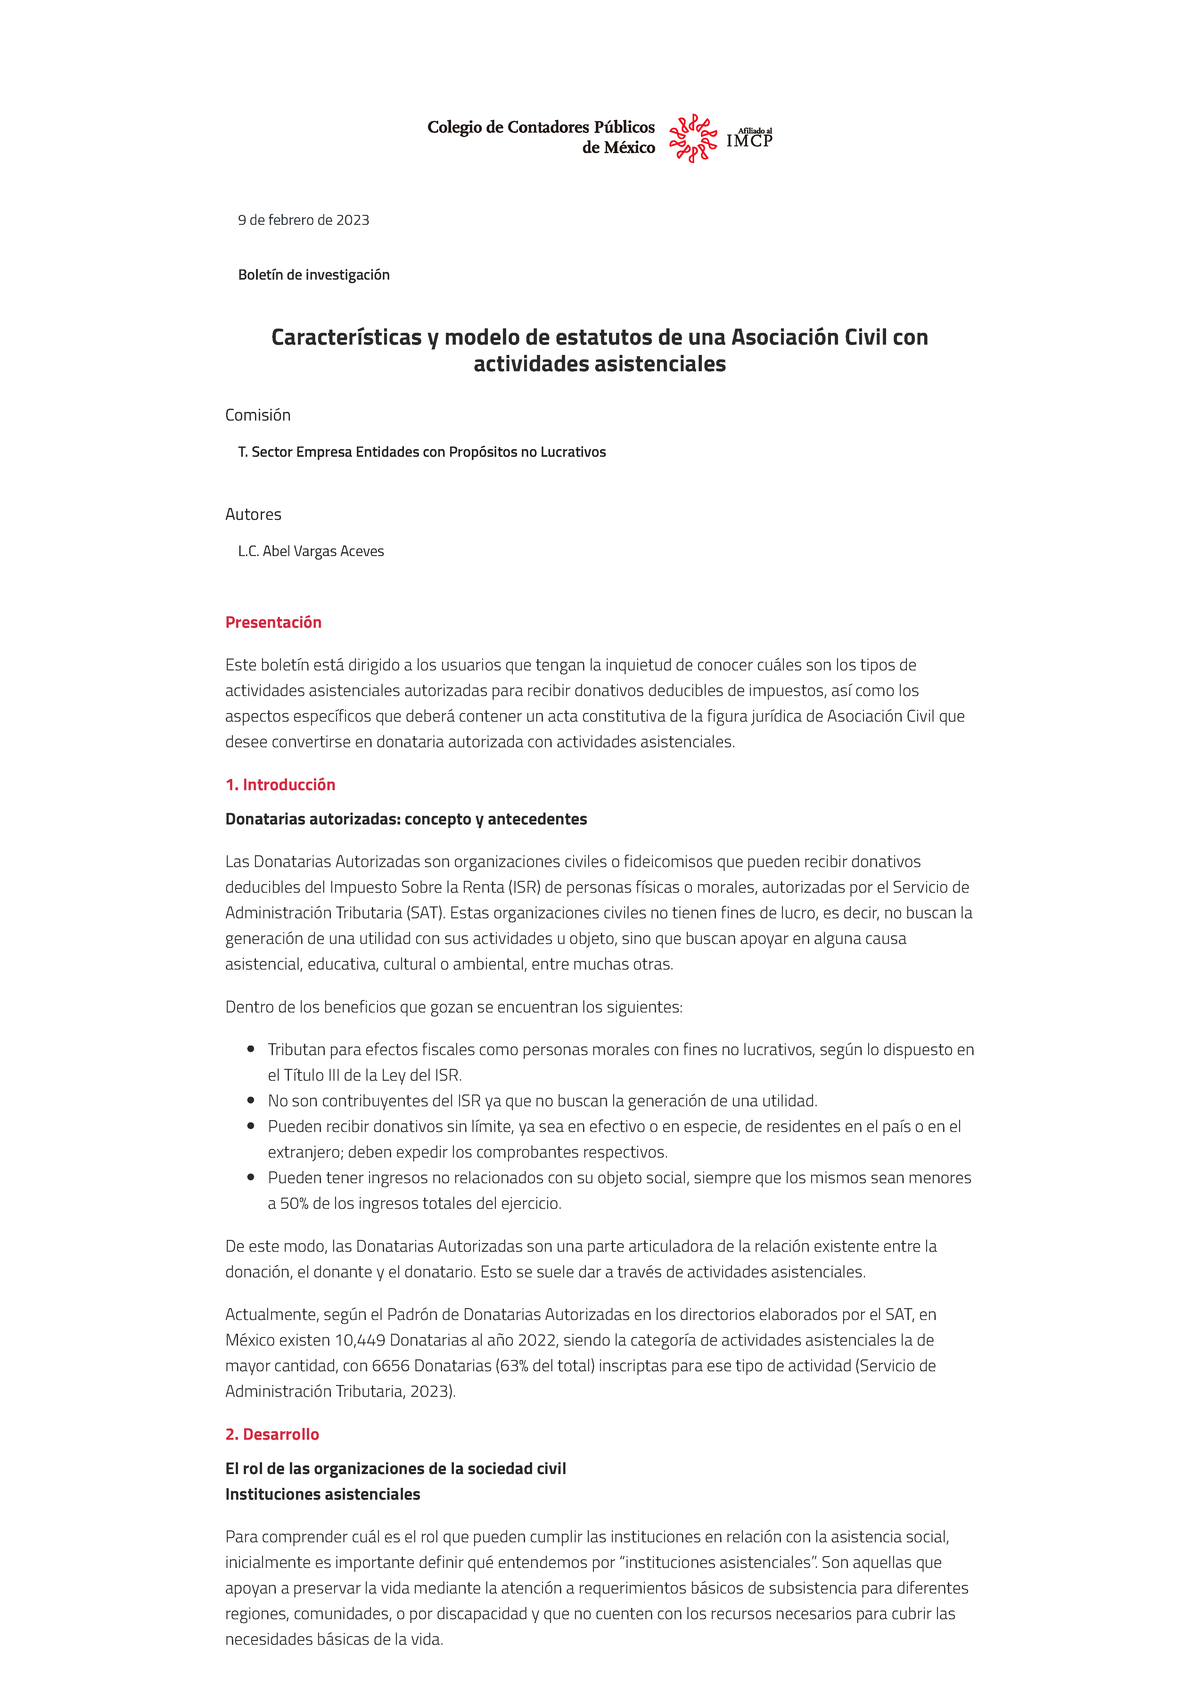 Características y modelo de estatutos de una Asociación Civil con  actividades asistenciales - Studocu